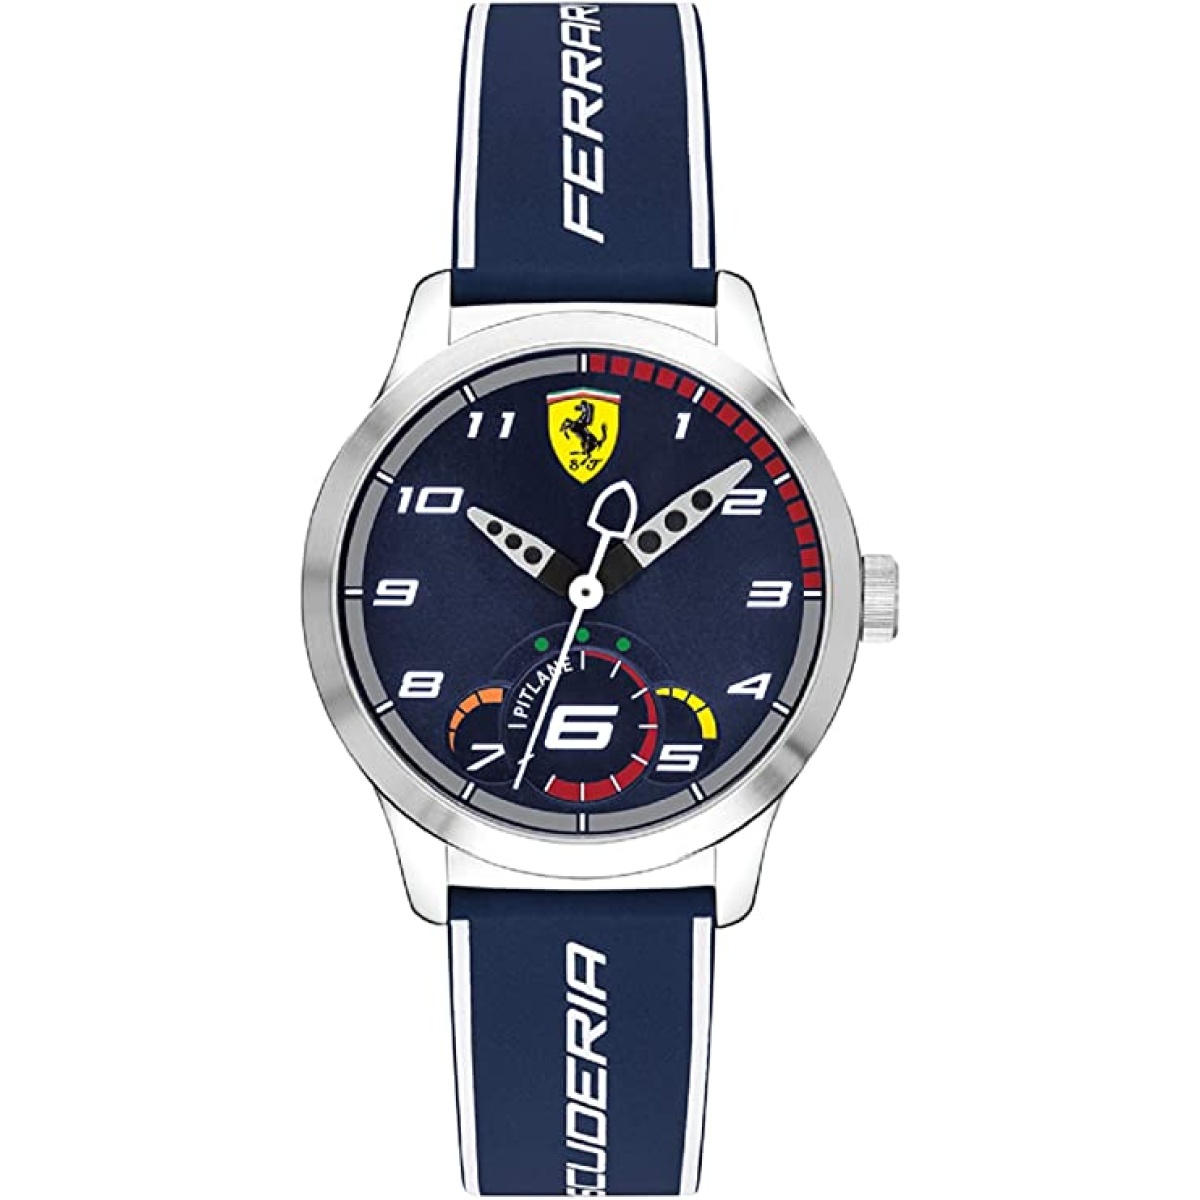 Orologio da polso Ferrari PITLANE - 0860005